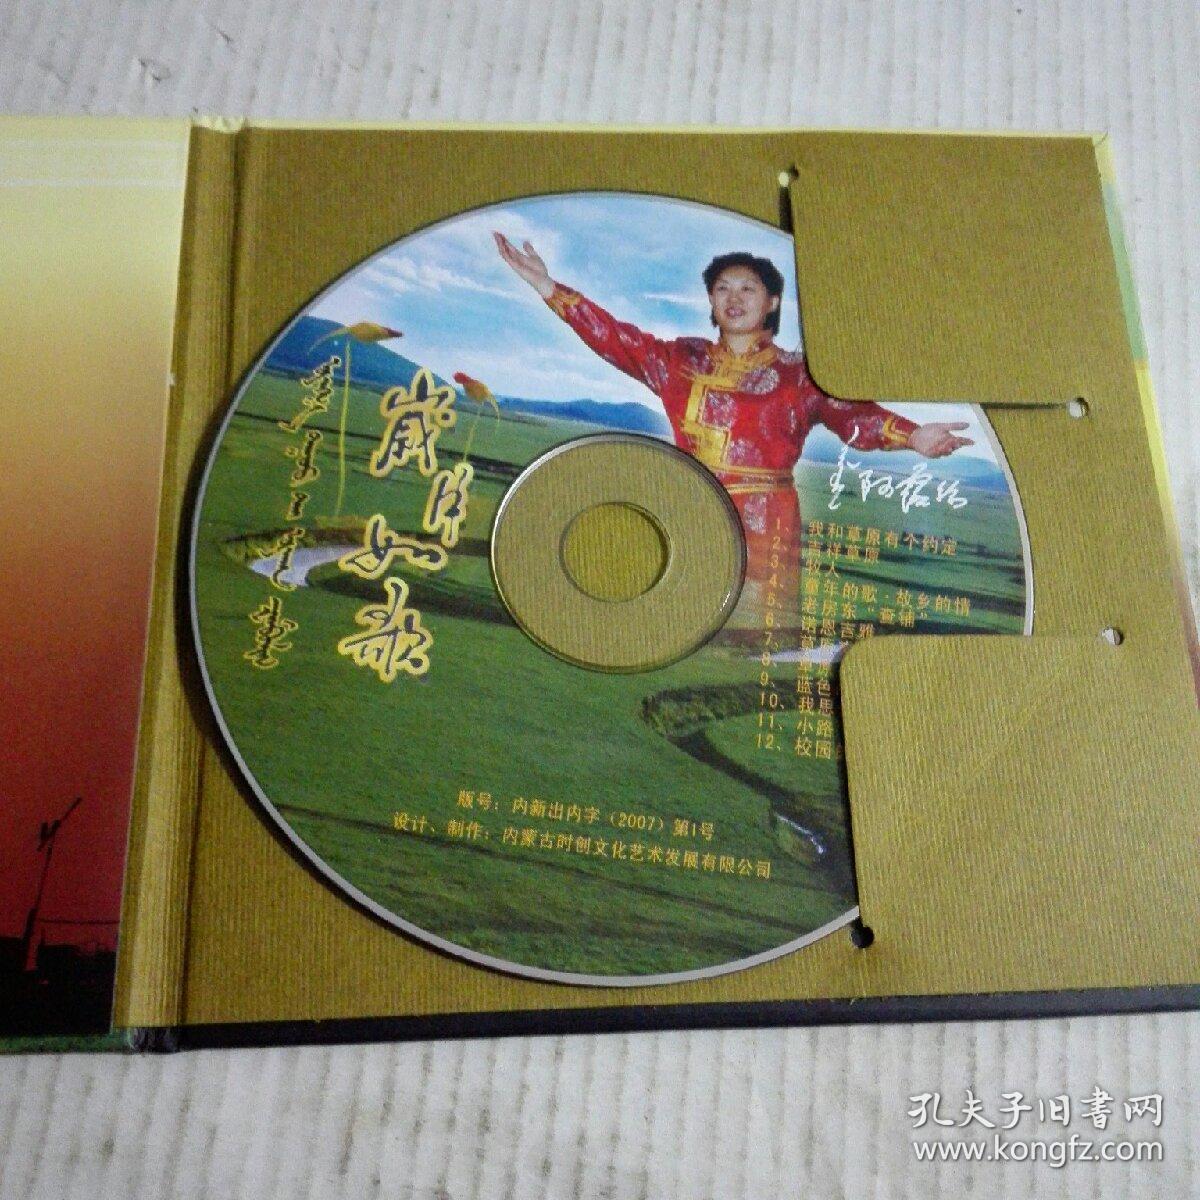 蒙古歌手阿露丝专辑《岁月如歌》